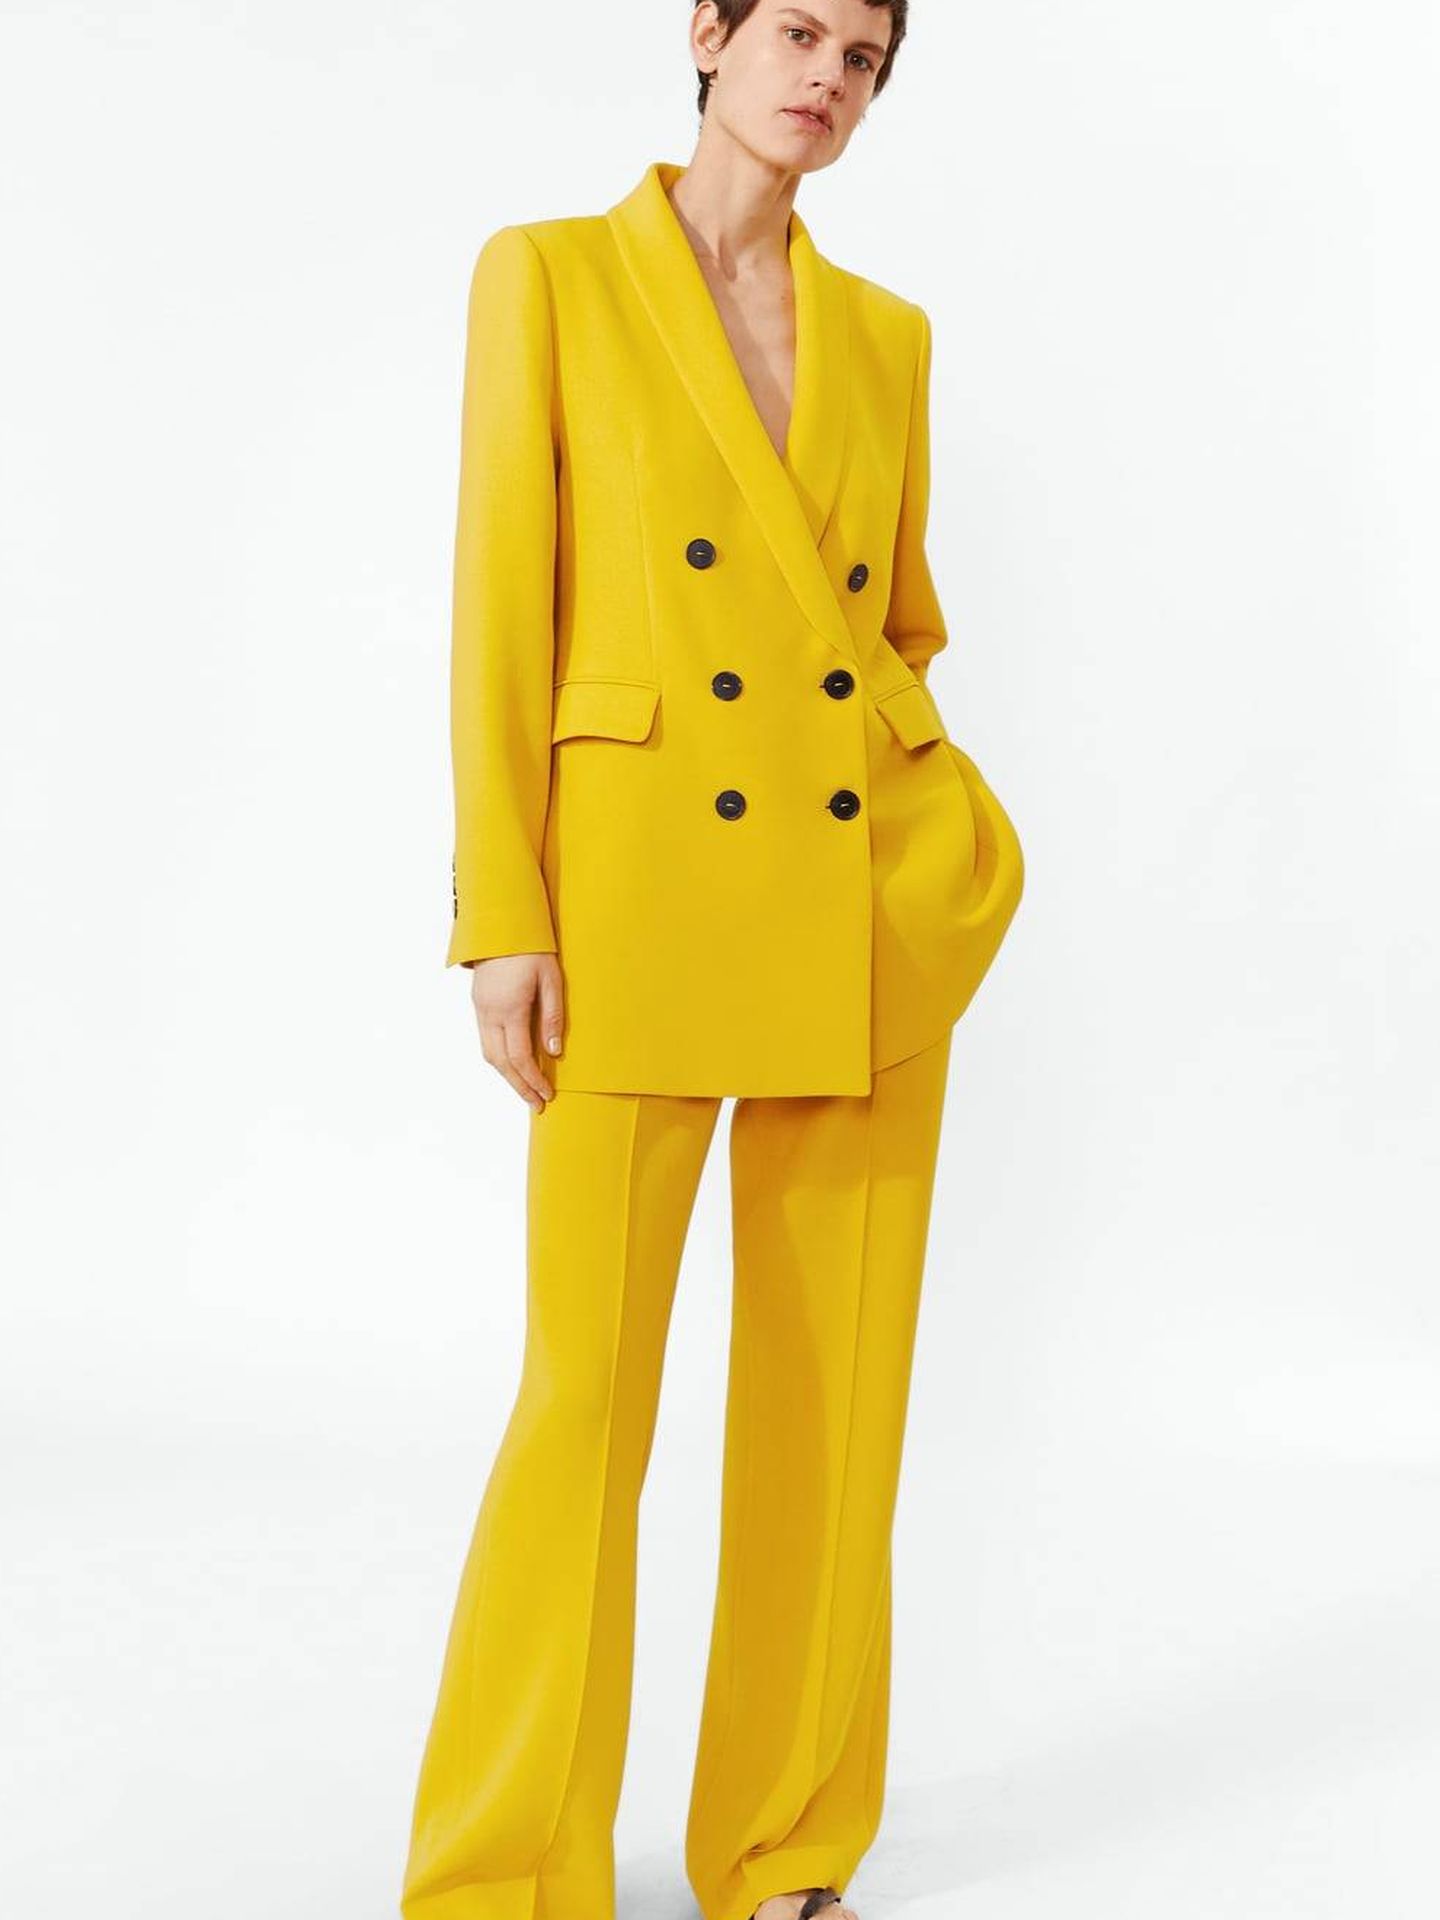 El traje de Vicky Martín Berrocal tal y como se muestra en la shop online de Zara. (Cortesía)